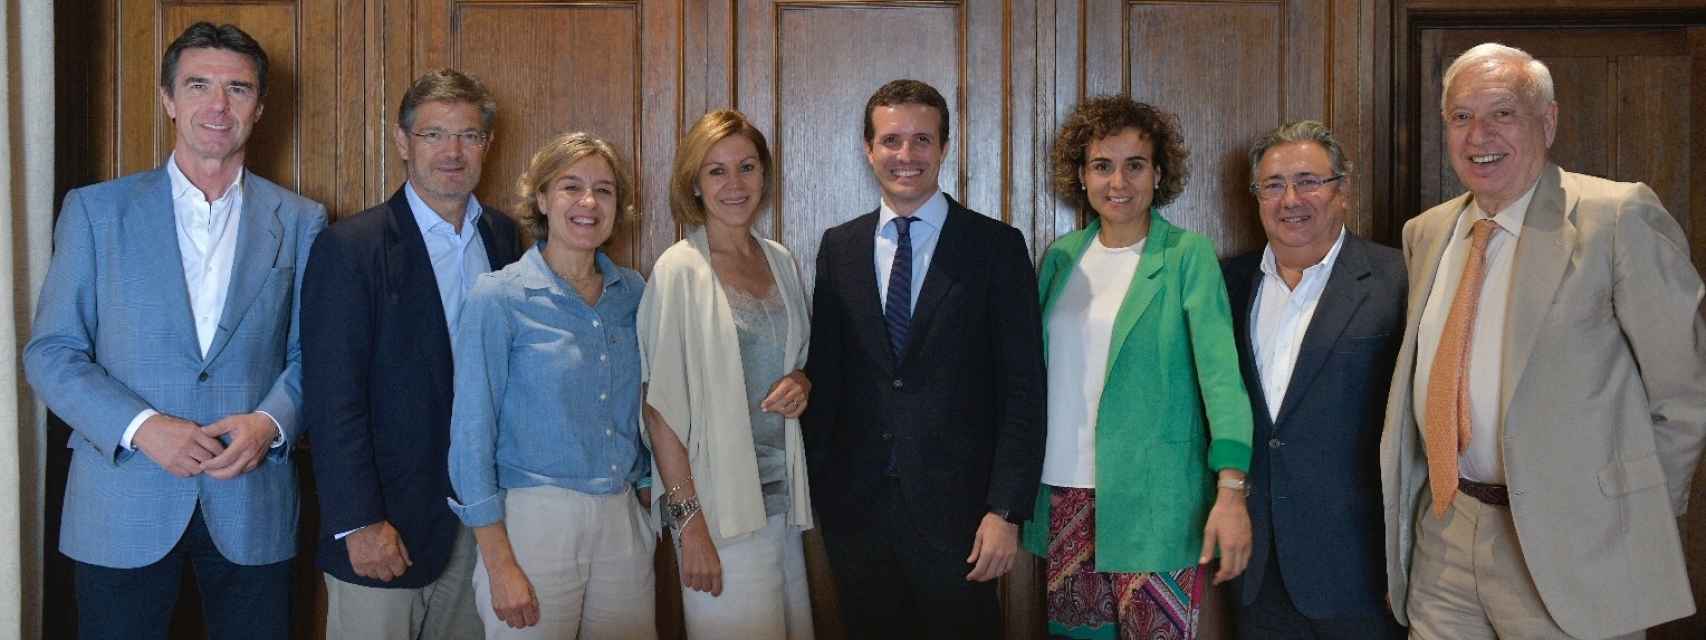 De izquierda a derecha: José Manuel Soria, Rafael Catalá, Isabel García Tejerina, María Dolores de Cospedal, Pablo Casado, Dolors Monserrat, Juan Ignacio Zoido y García Margallo.